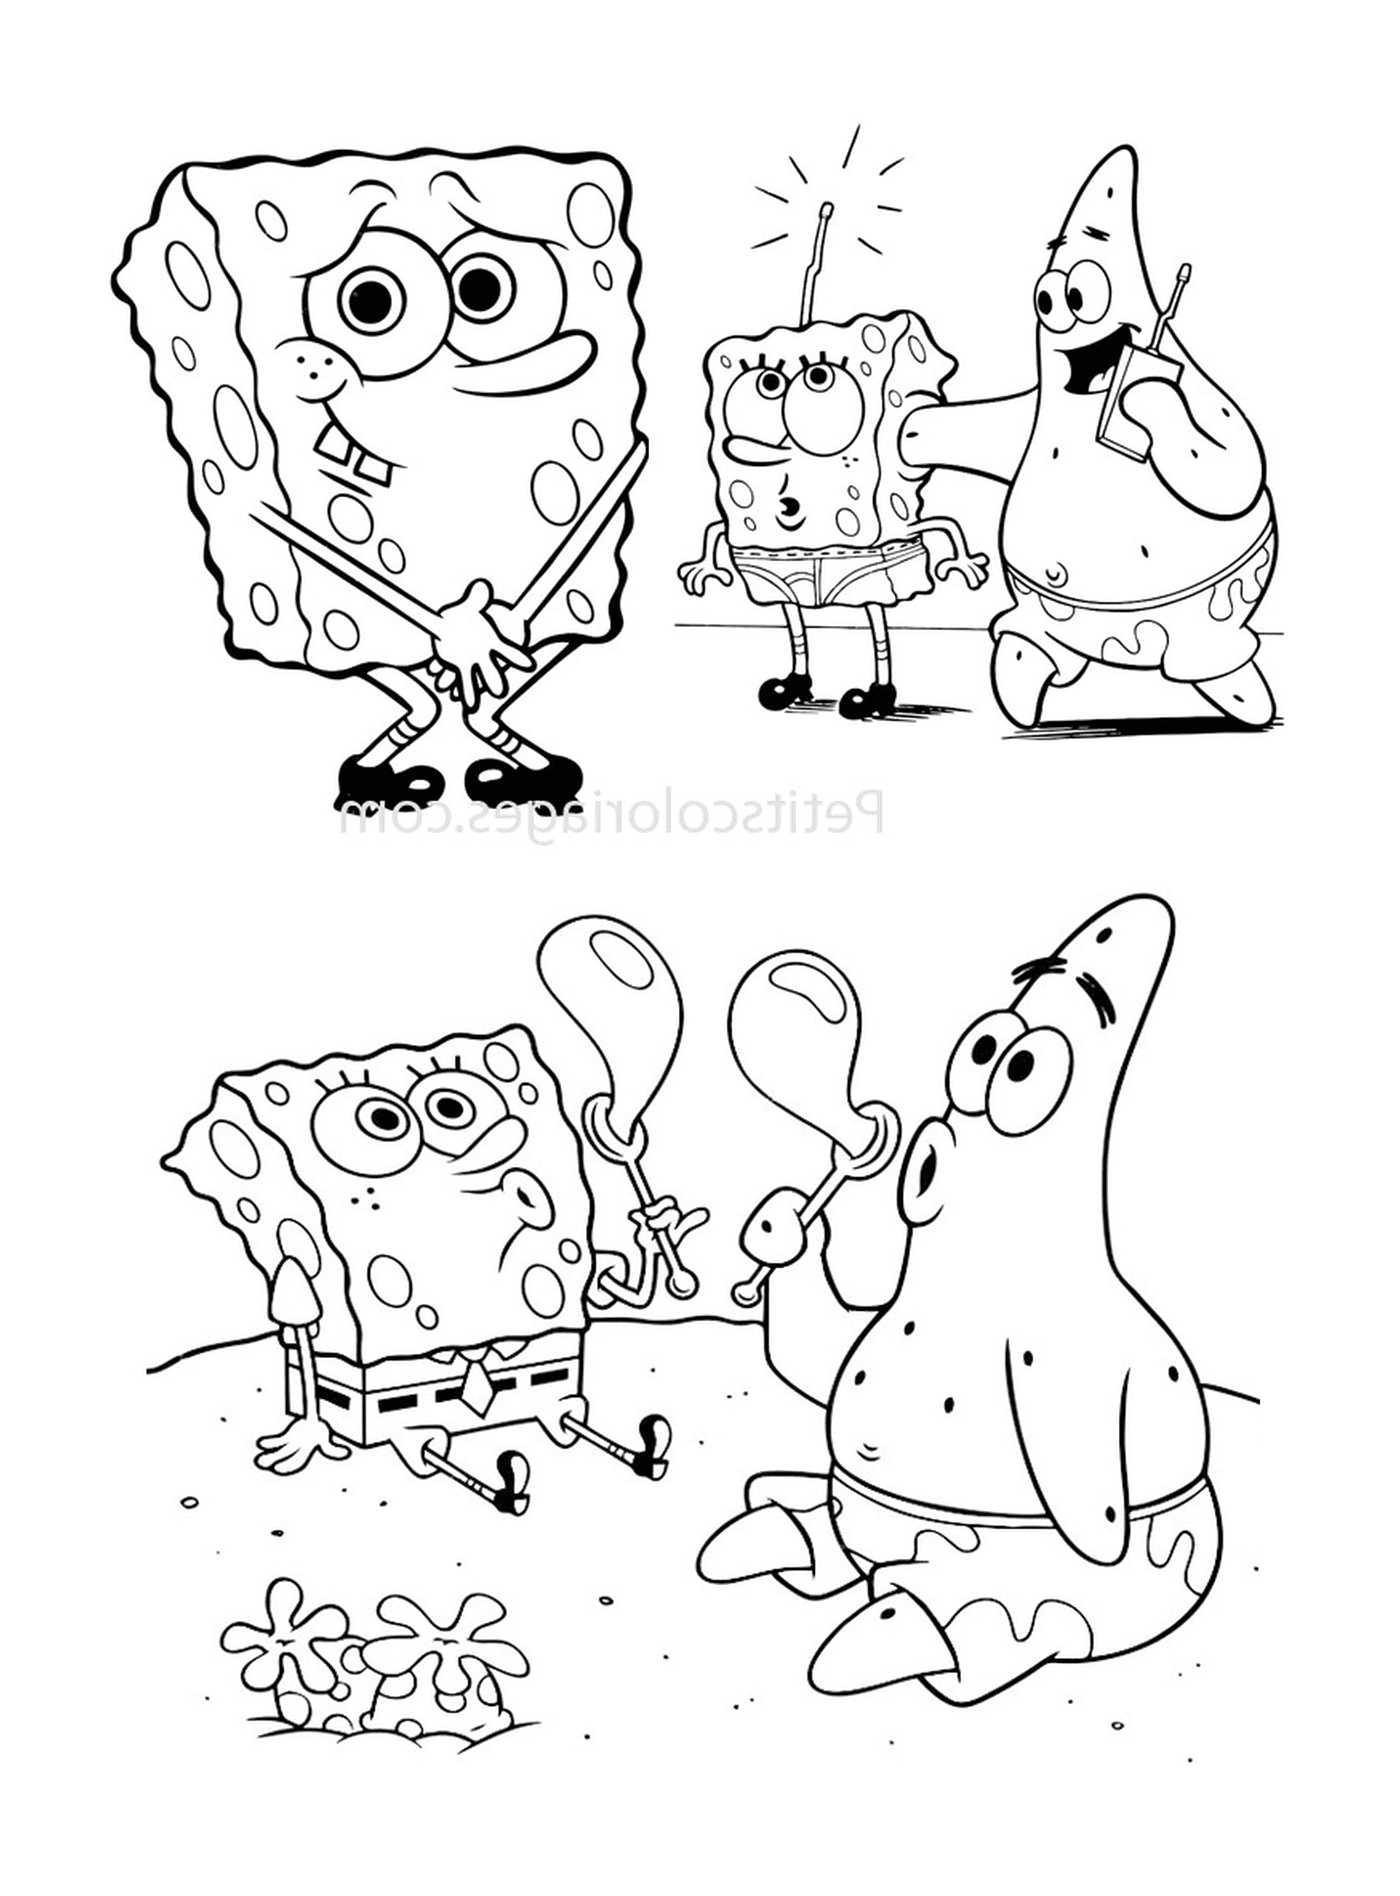  Eine Gruppe von Charakteren von Bob the Sponge 